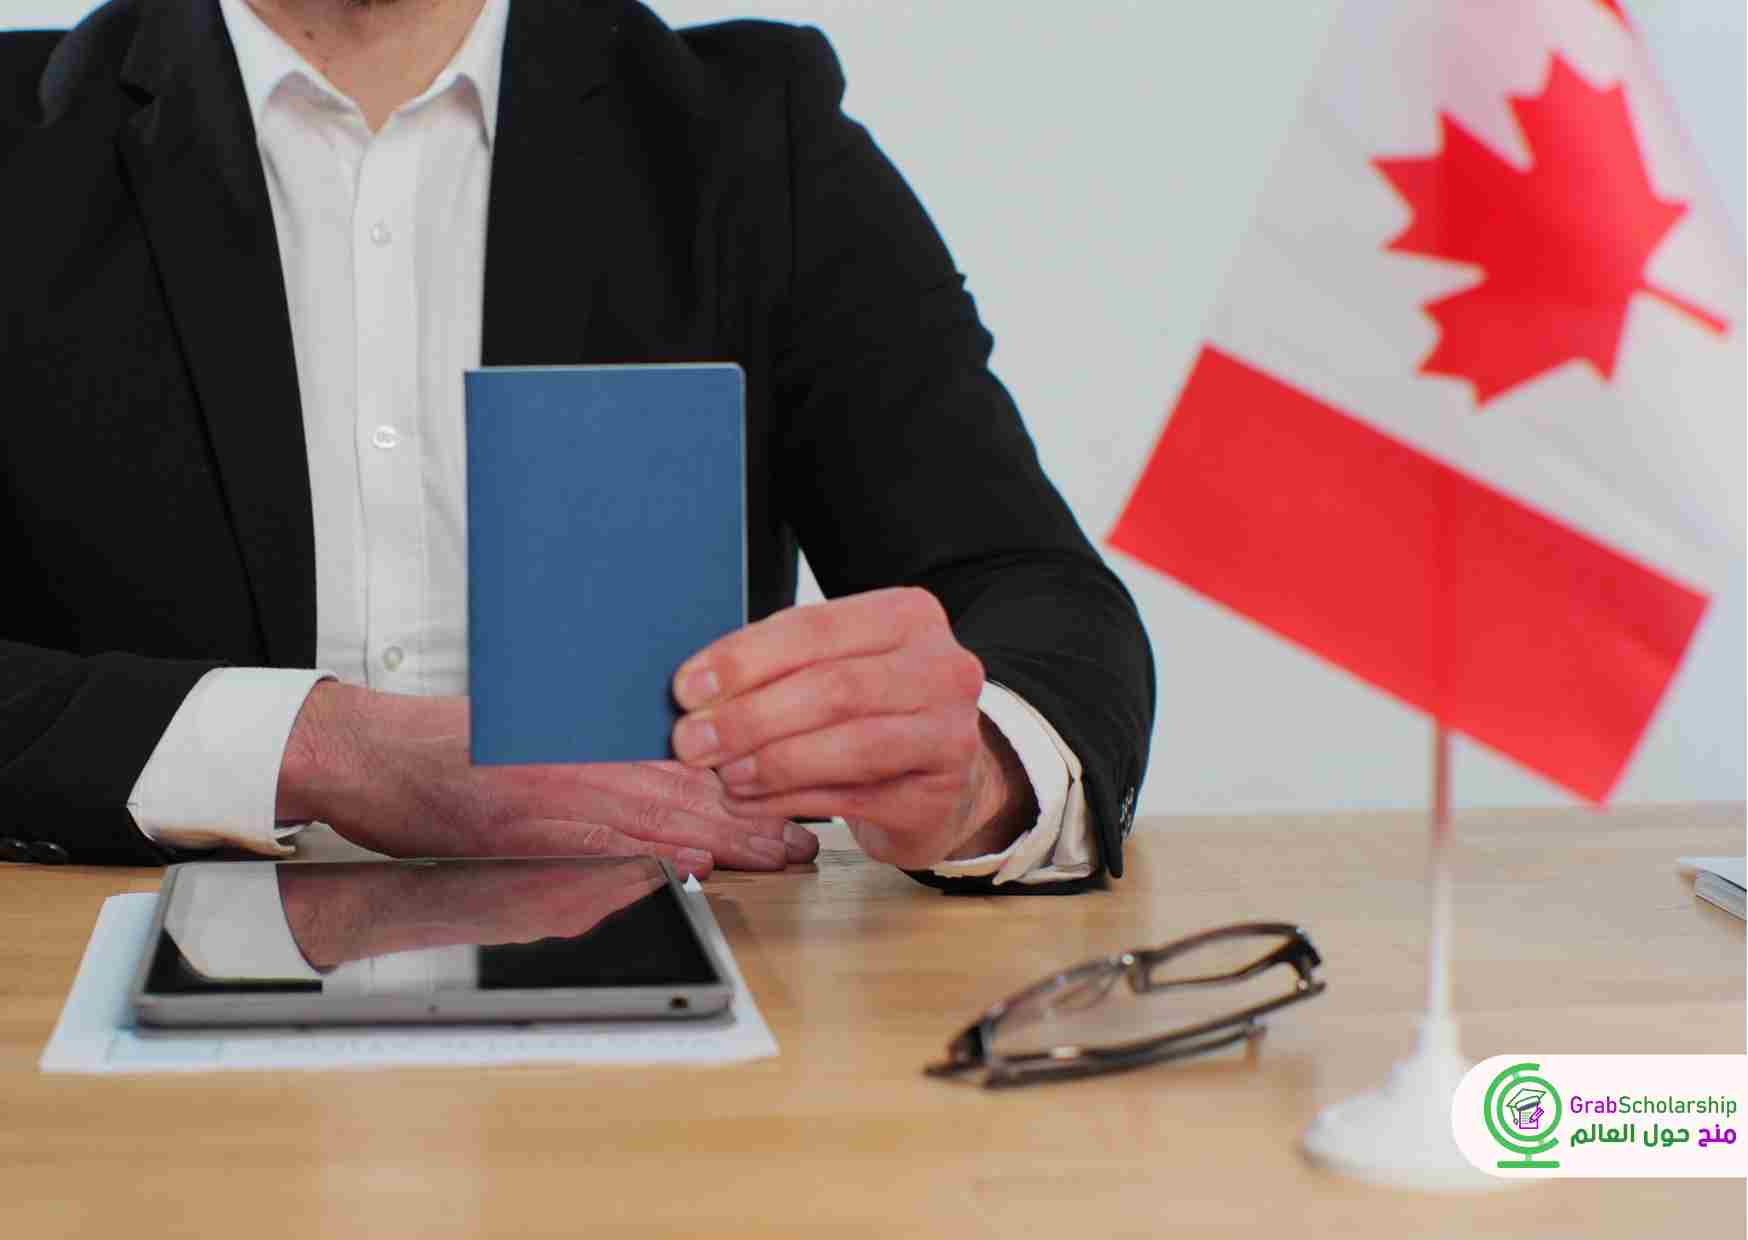 التسجيل لوظيفة في كندا براتب 3840 دولار كندي شهريا